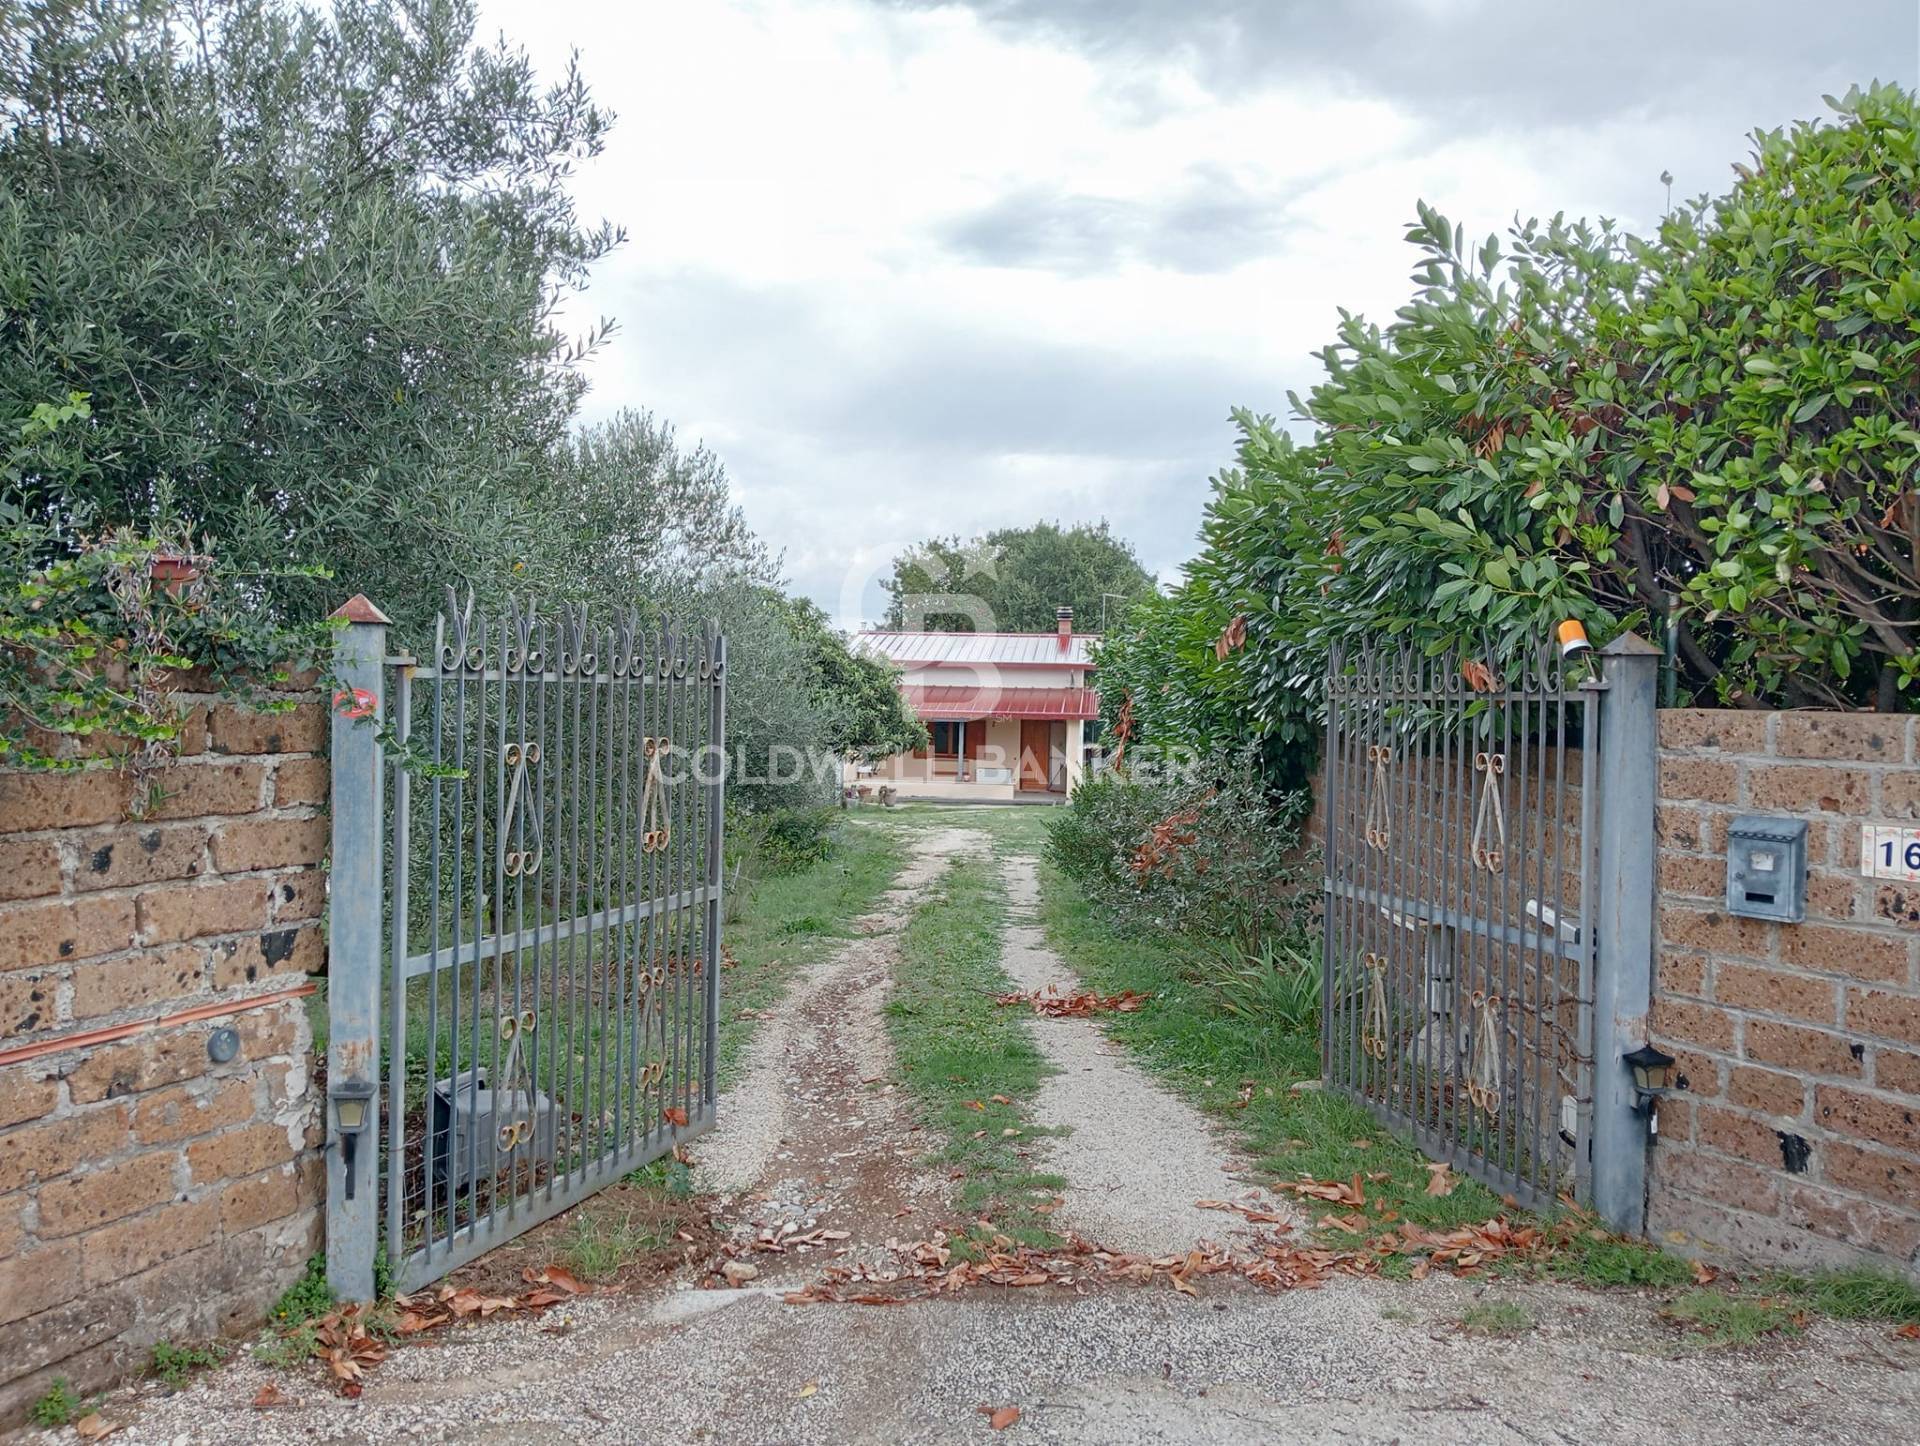 Rustico / Casale in vendita a Gallese, 3 locali, prezzo € 37.000 | PortaleAgenzieImmobiliari.it